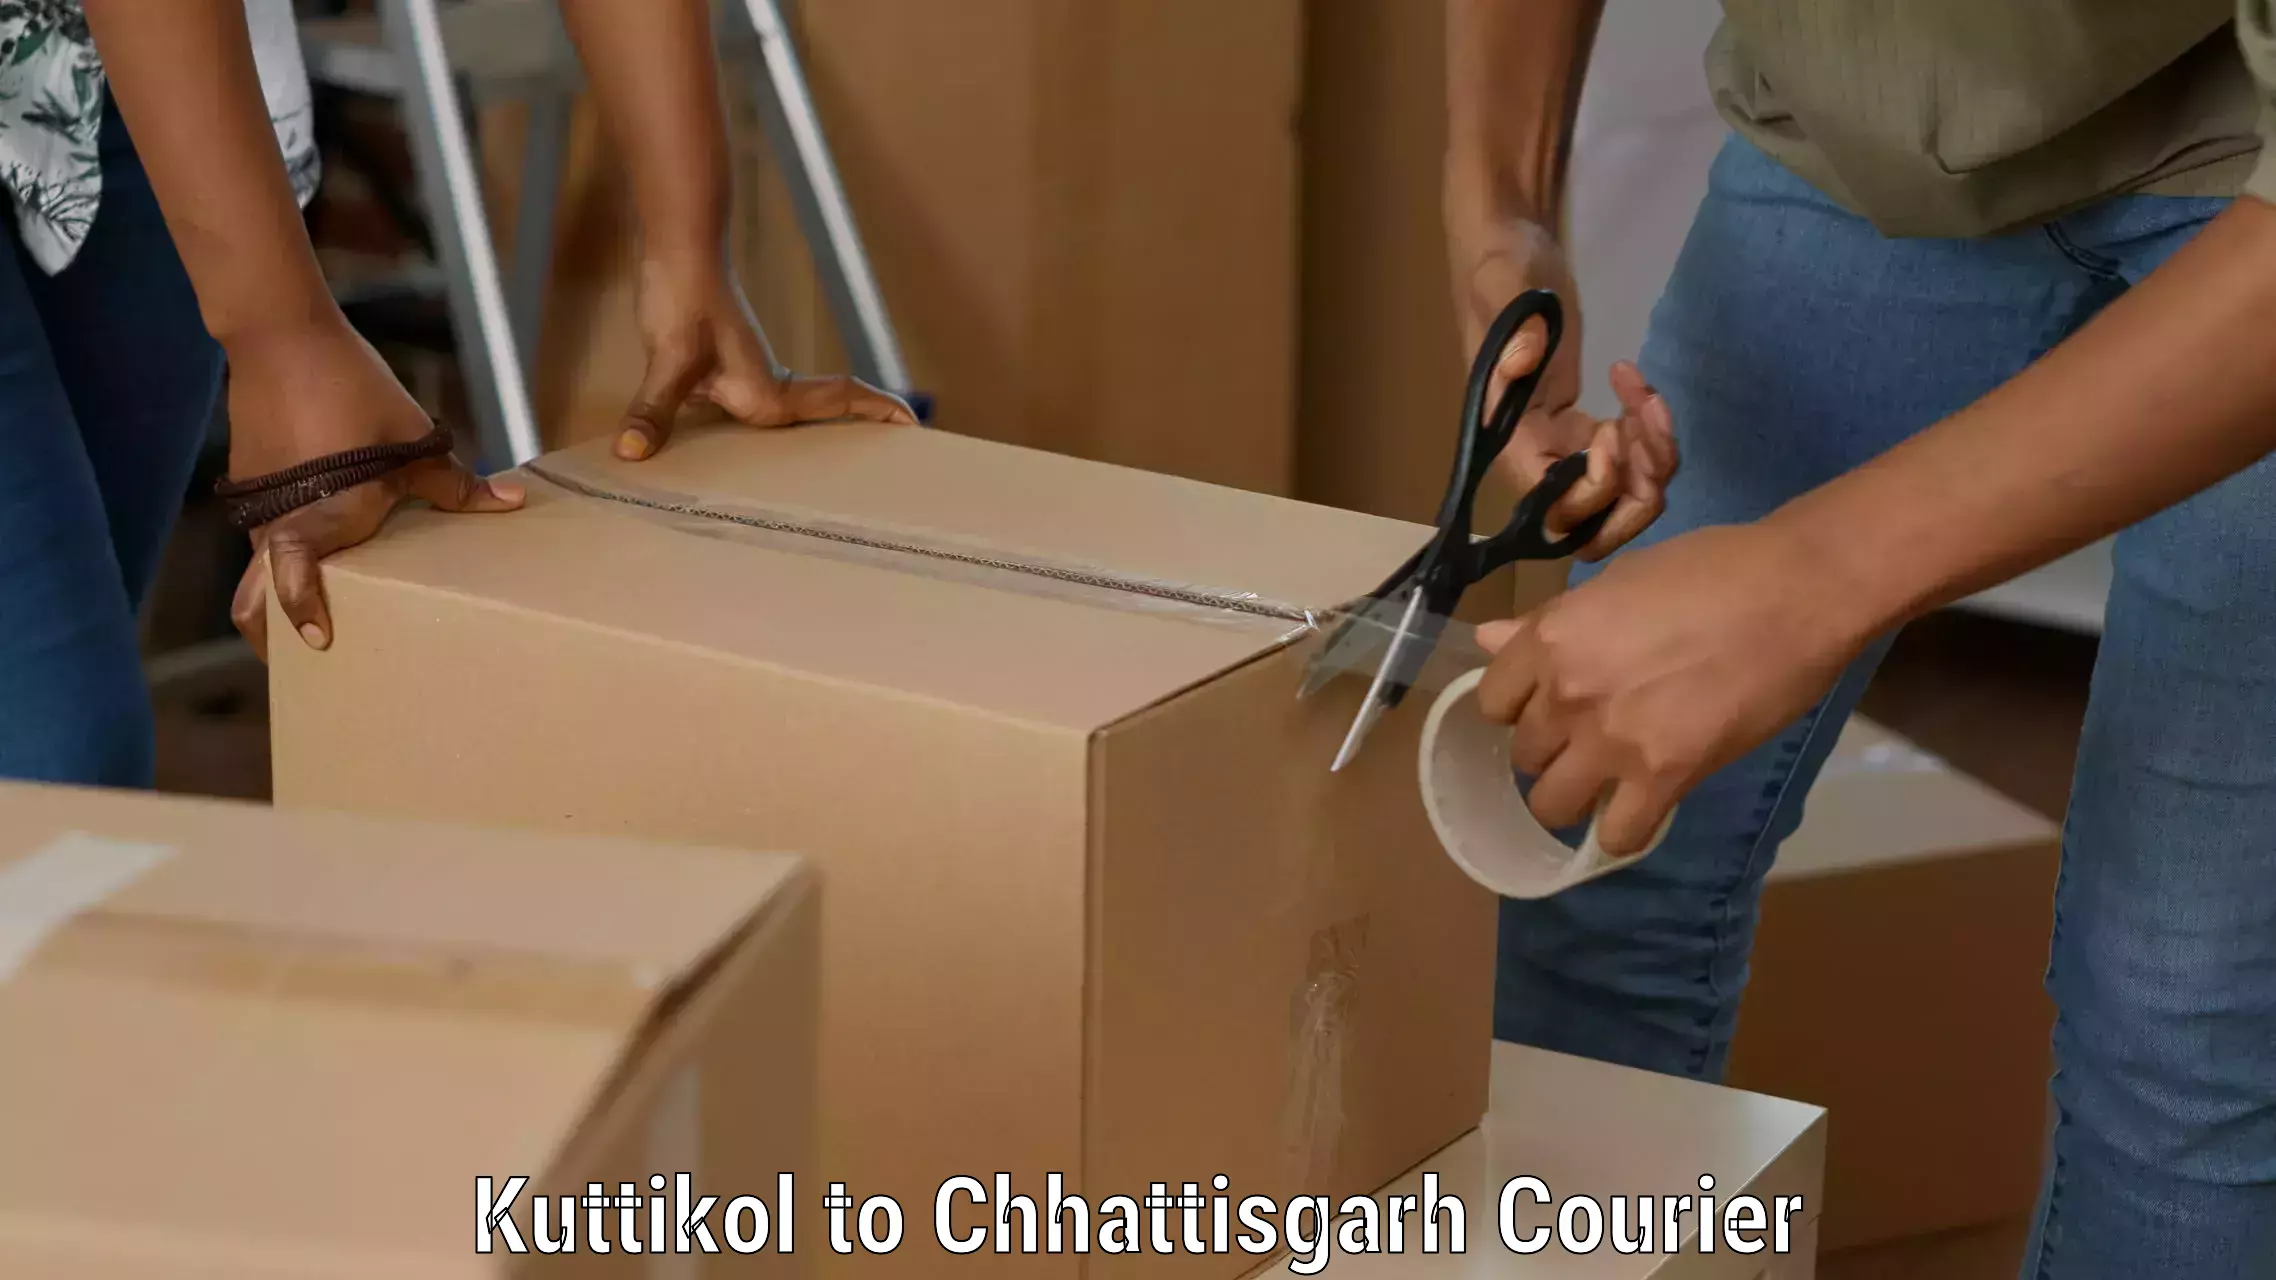 Reliable logistics providers Kuttikol to Sakti